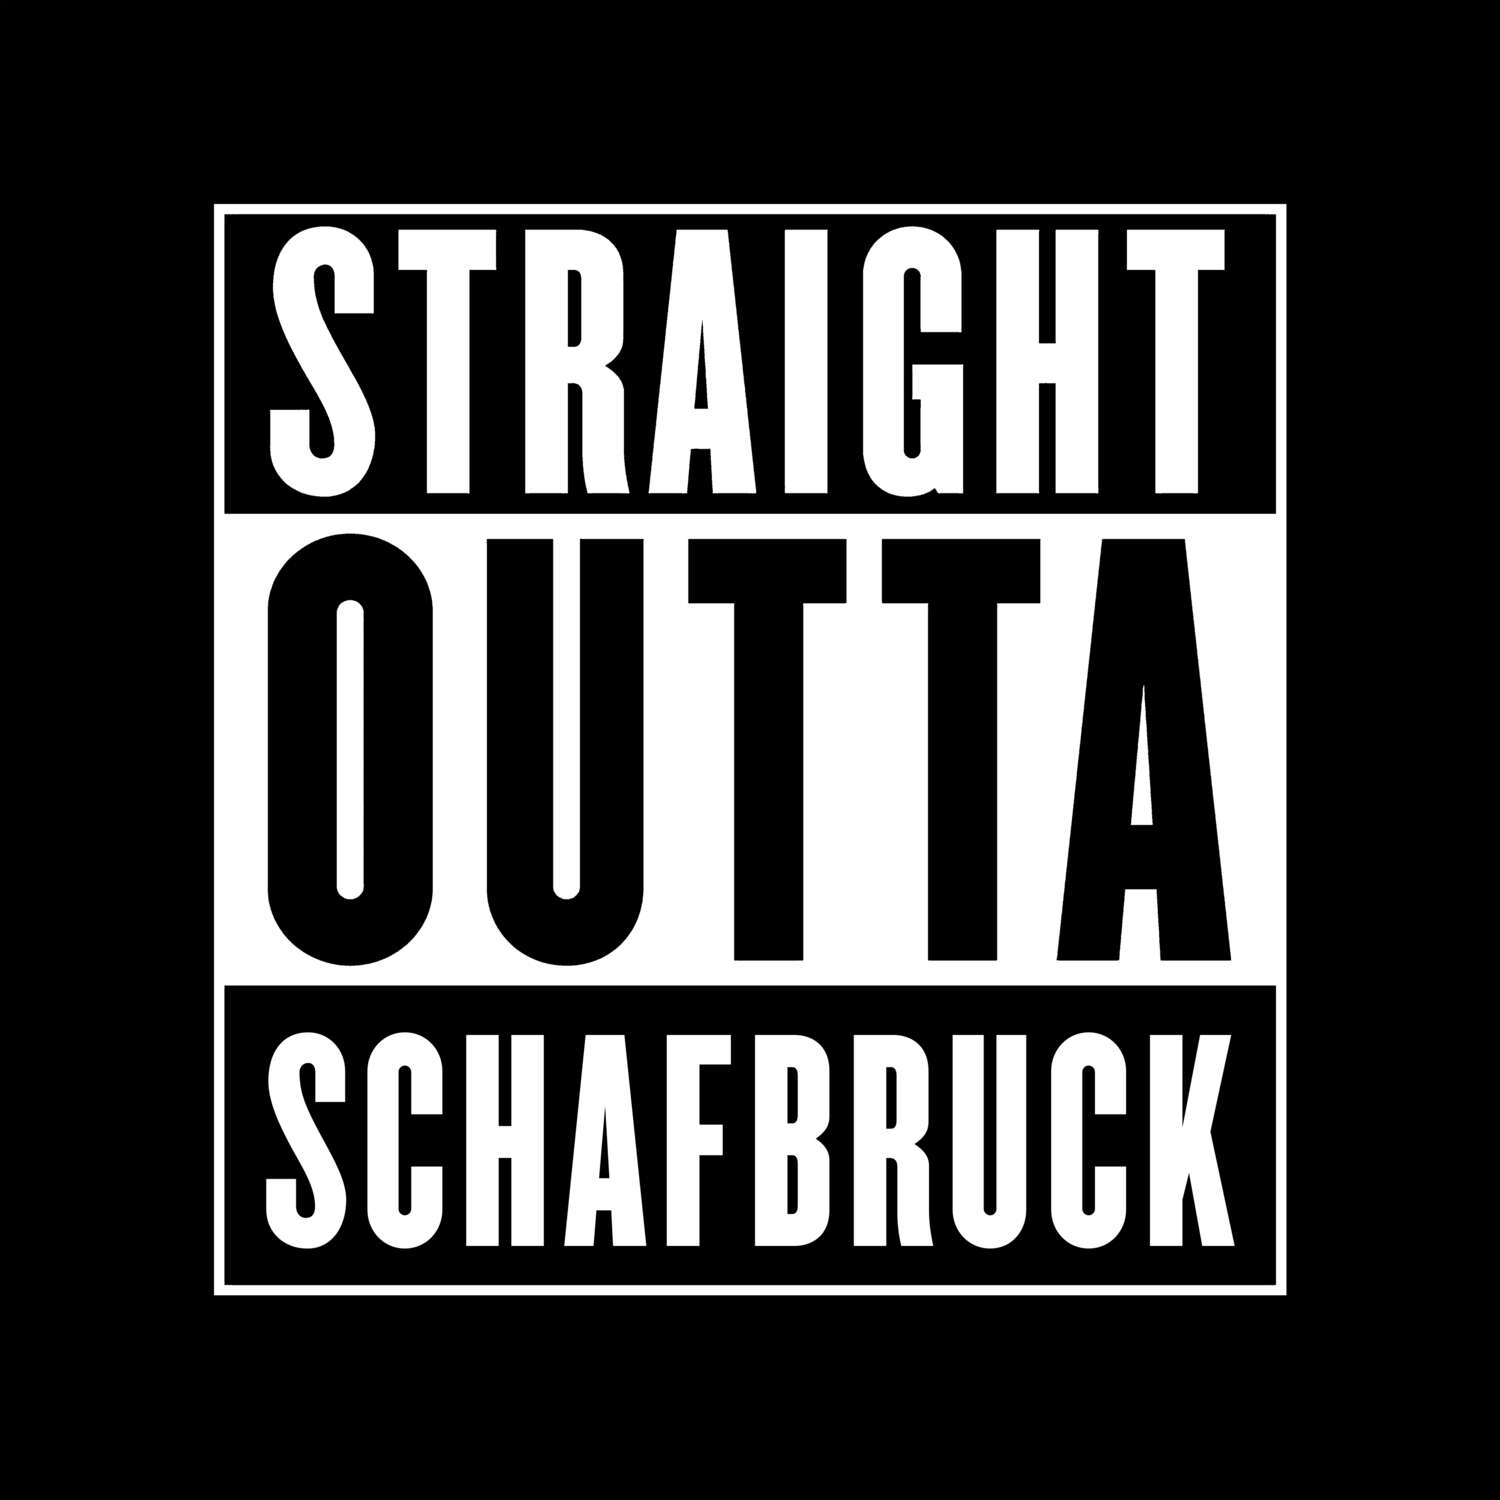 Schafbruck T-Shirt »Straight Outta«